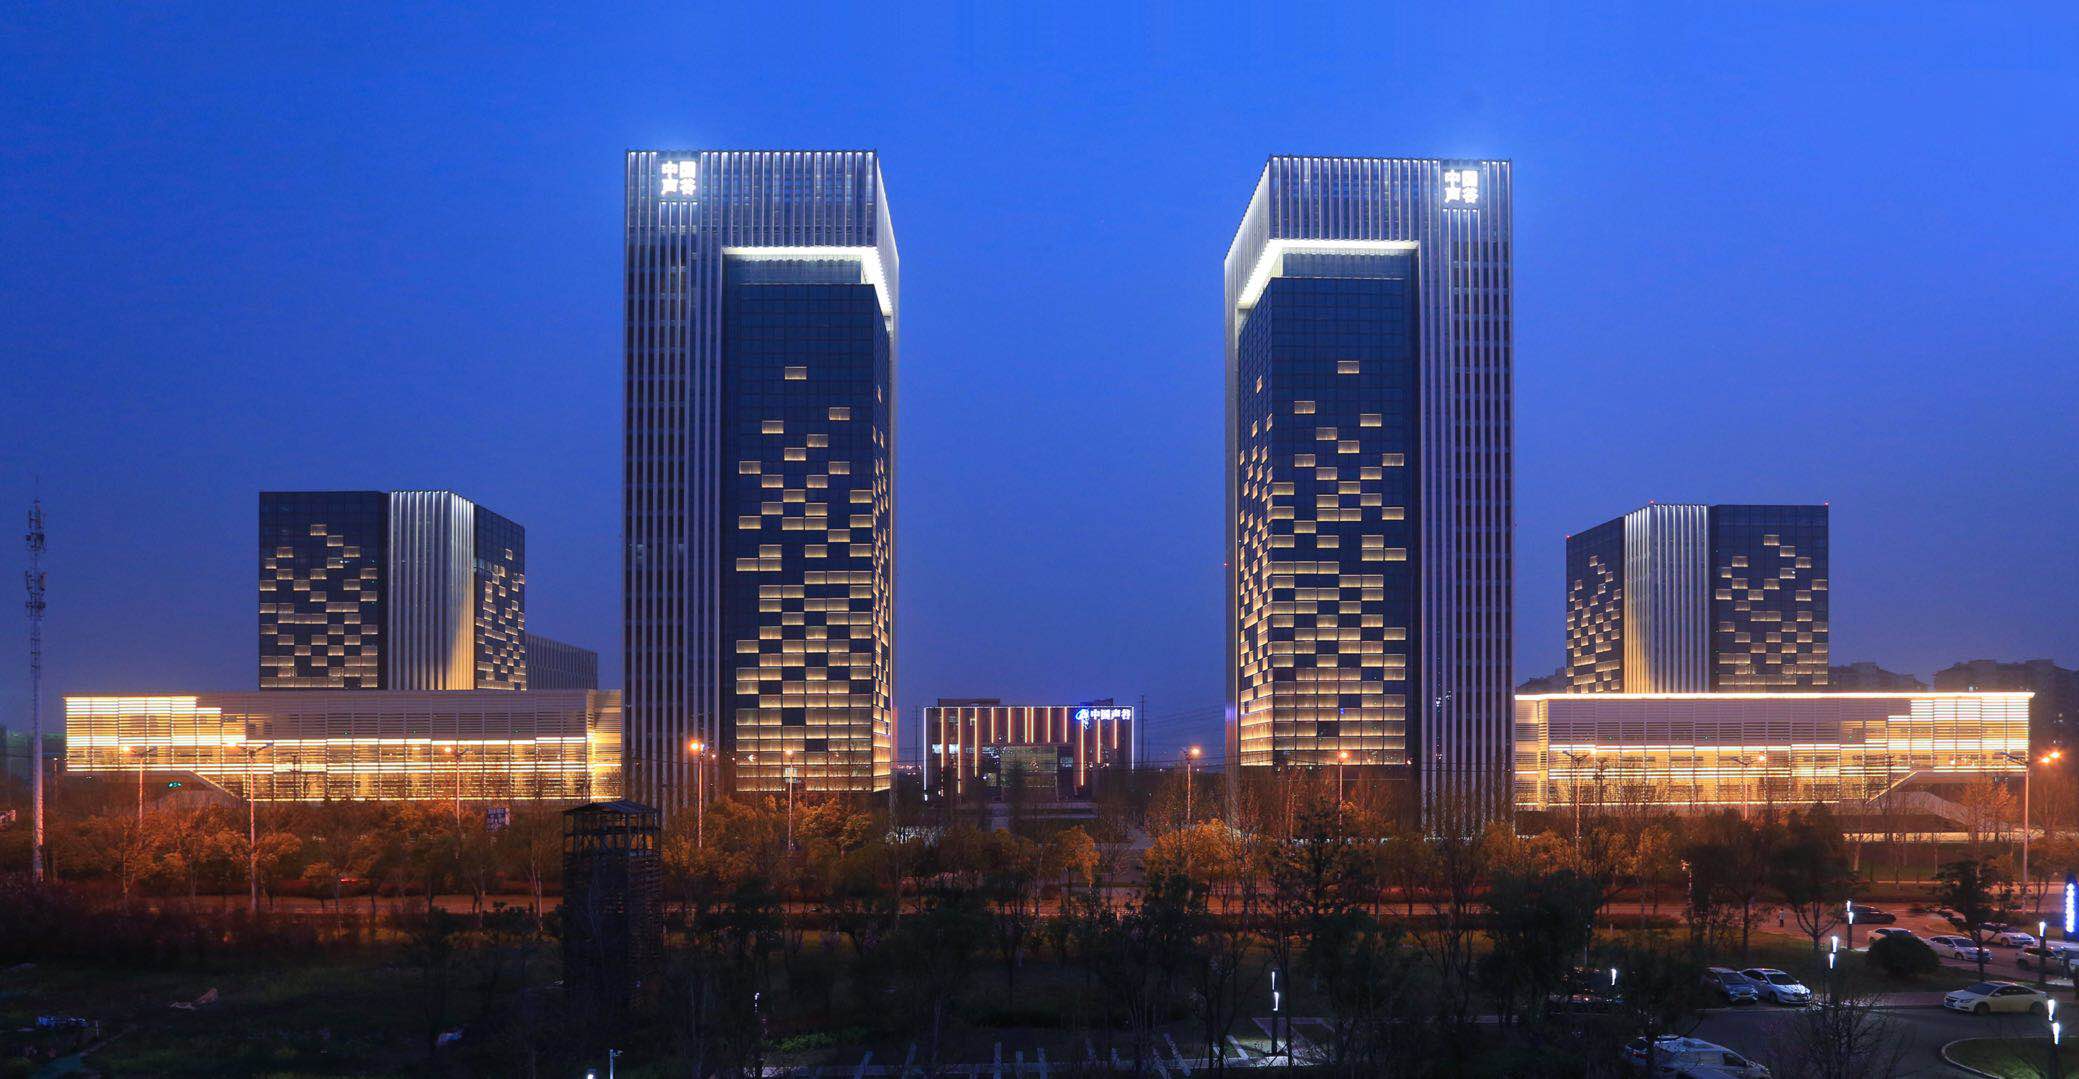 中国（合肥）国际智能语音产业园一期孵化园A区泛光照明工程——2019神灯奖申报工程